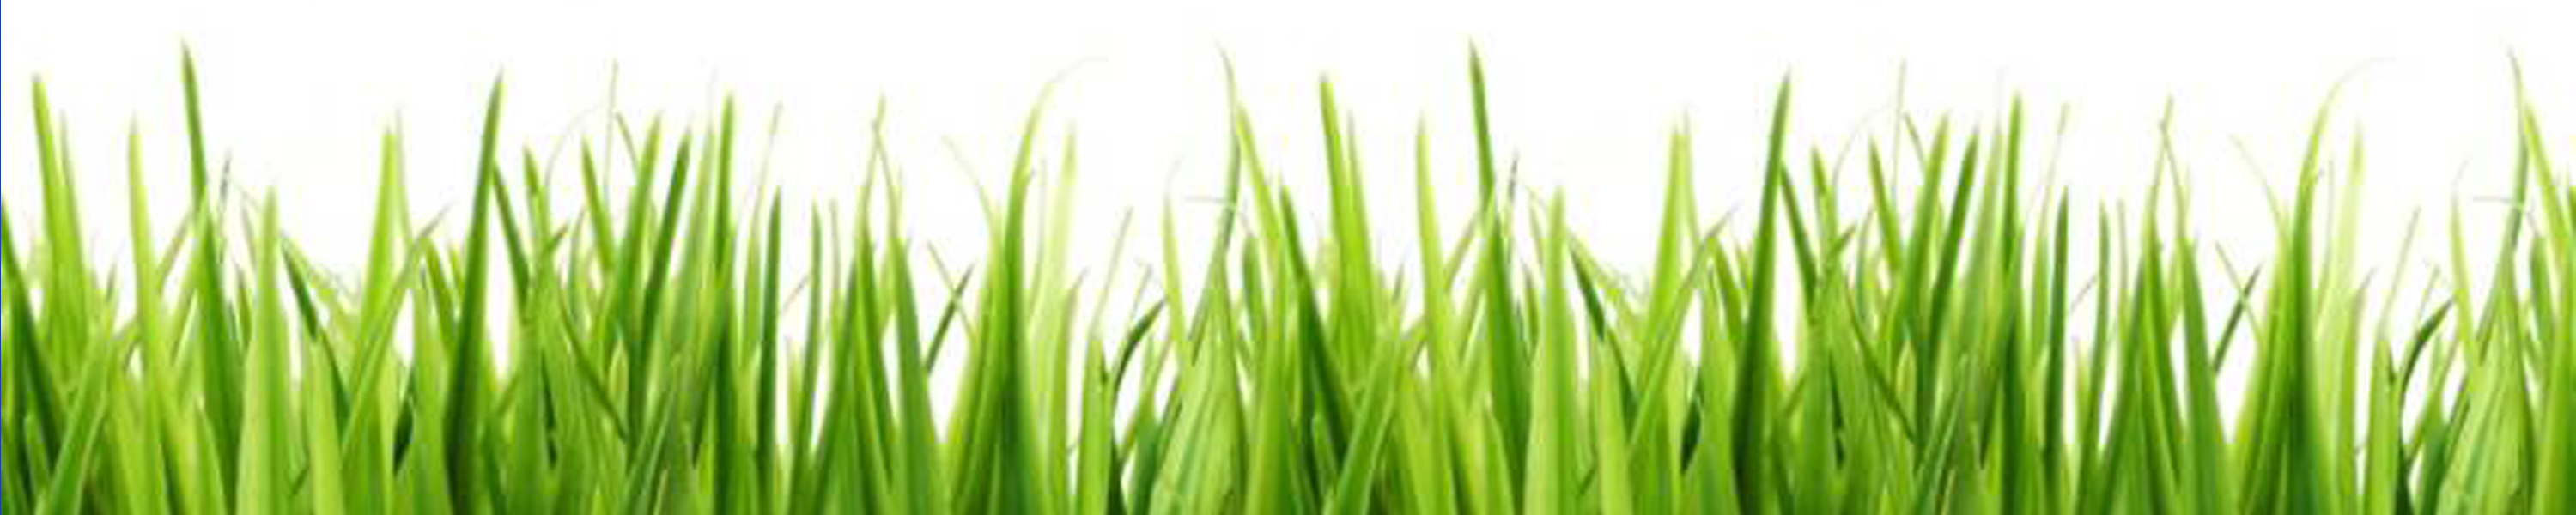 Grass clip art clipart image - Grass Border Clip Art